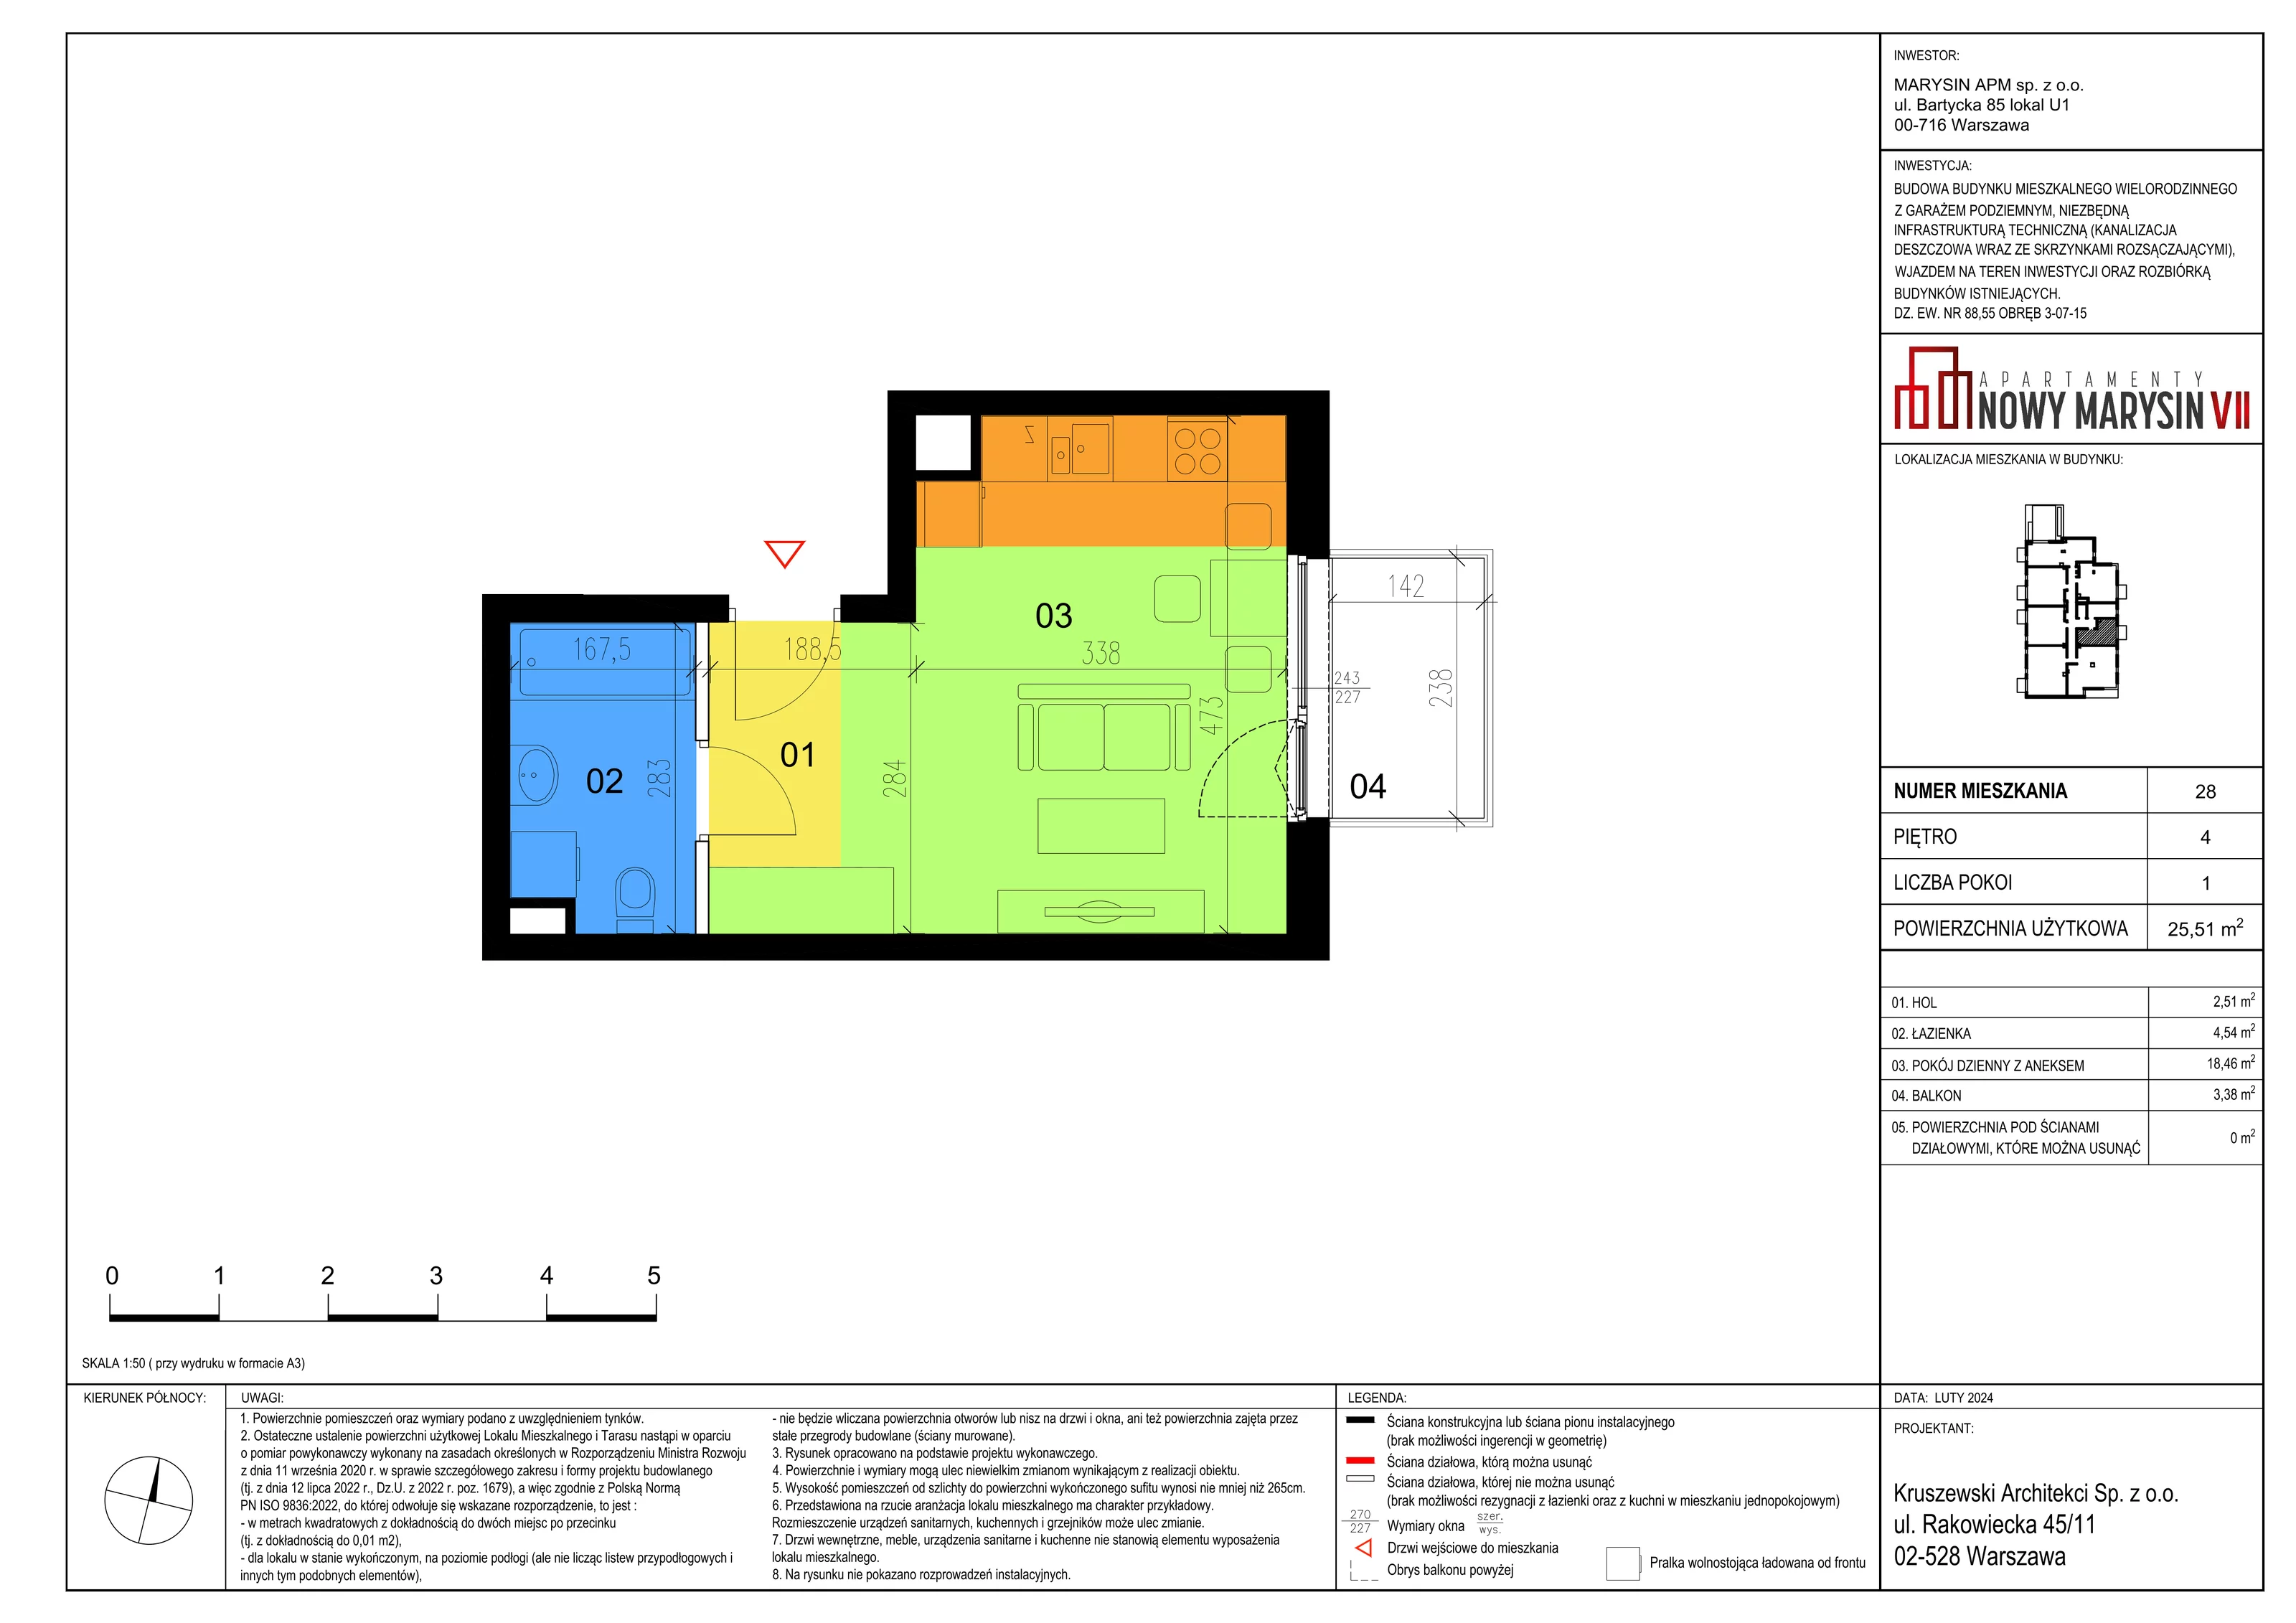 Mieszkanie 25,51 m², piętro 4, oferta nr VII_28, Apartamenty Marysin, Warszawa, Wawer, Marysin Wawerski, ul. Bluszczowa 14